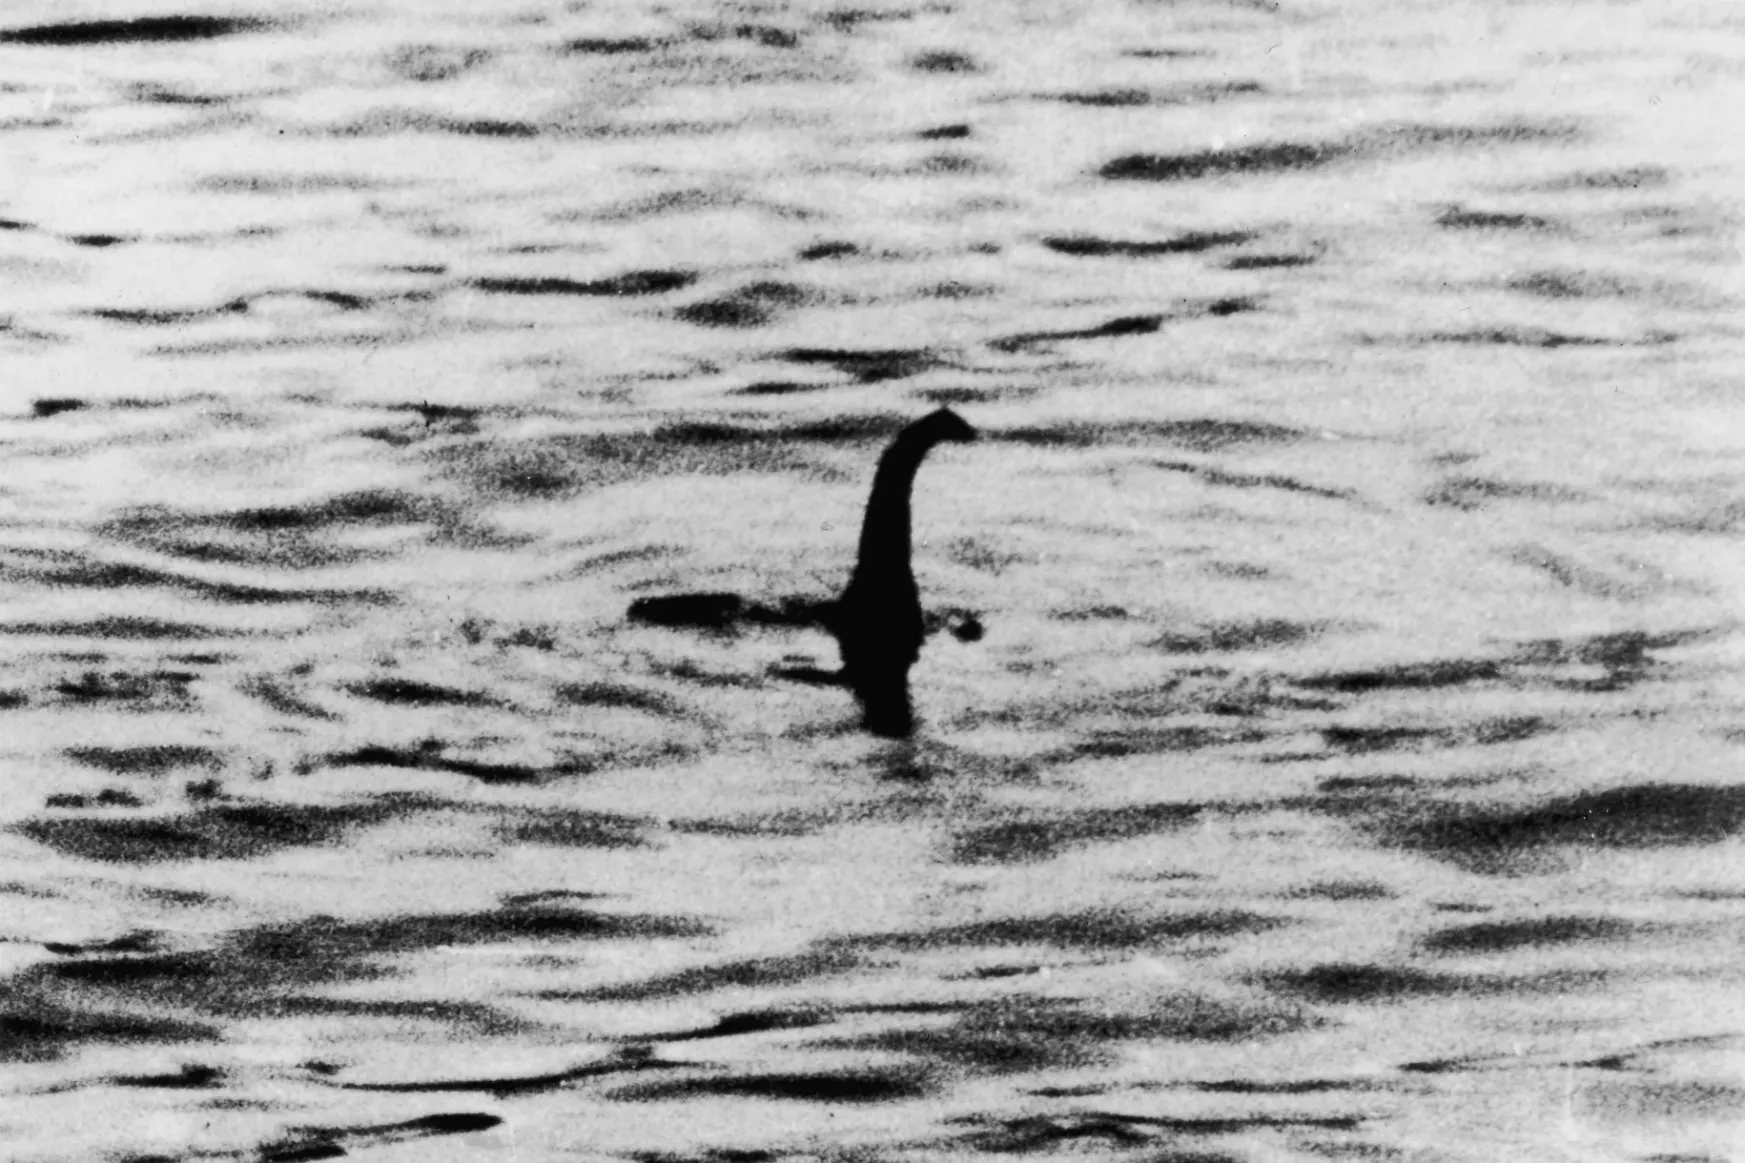 Megpróbált átverni mindenkit, lebukott, megsértődött, és bosszúból elkészítette a leghíresebb fotót a Loch Ness-i szörnyről